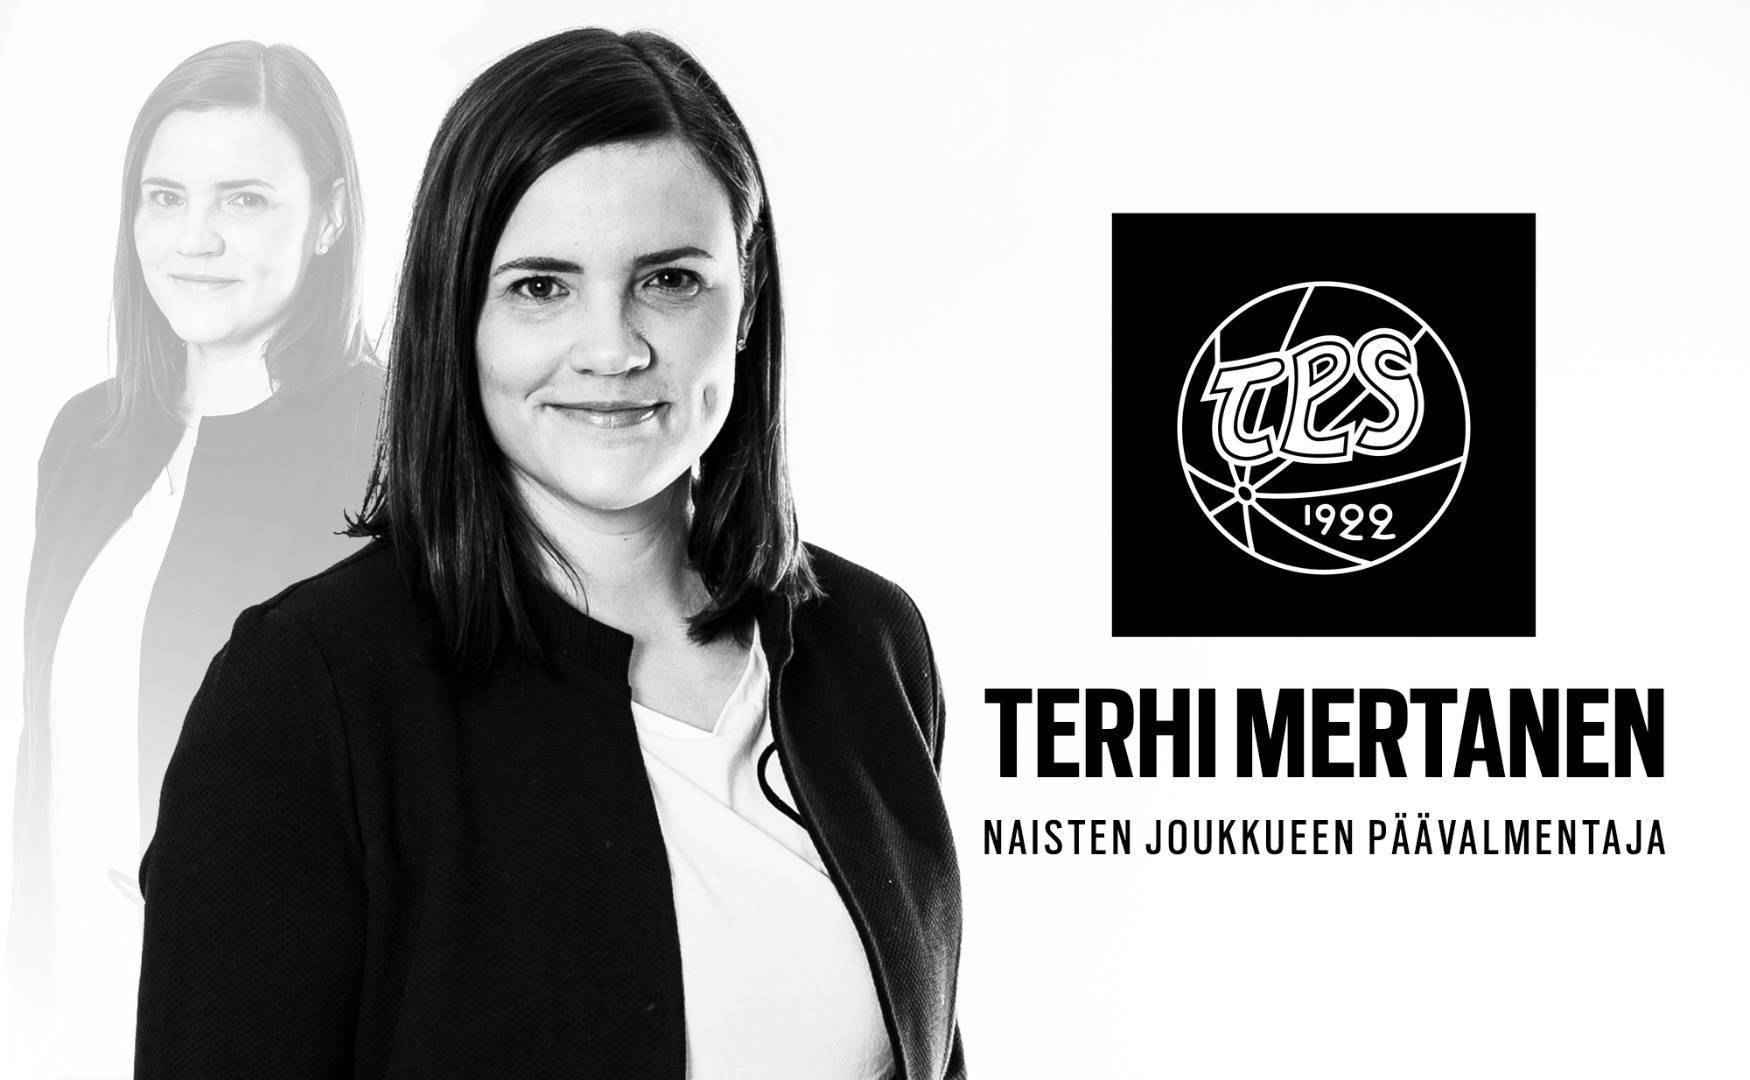 Terhi Mertanen naisten joukkueen päävalmentajaksi